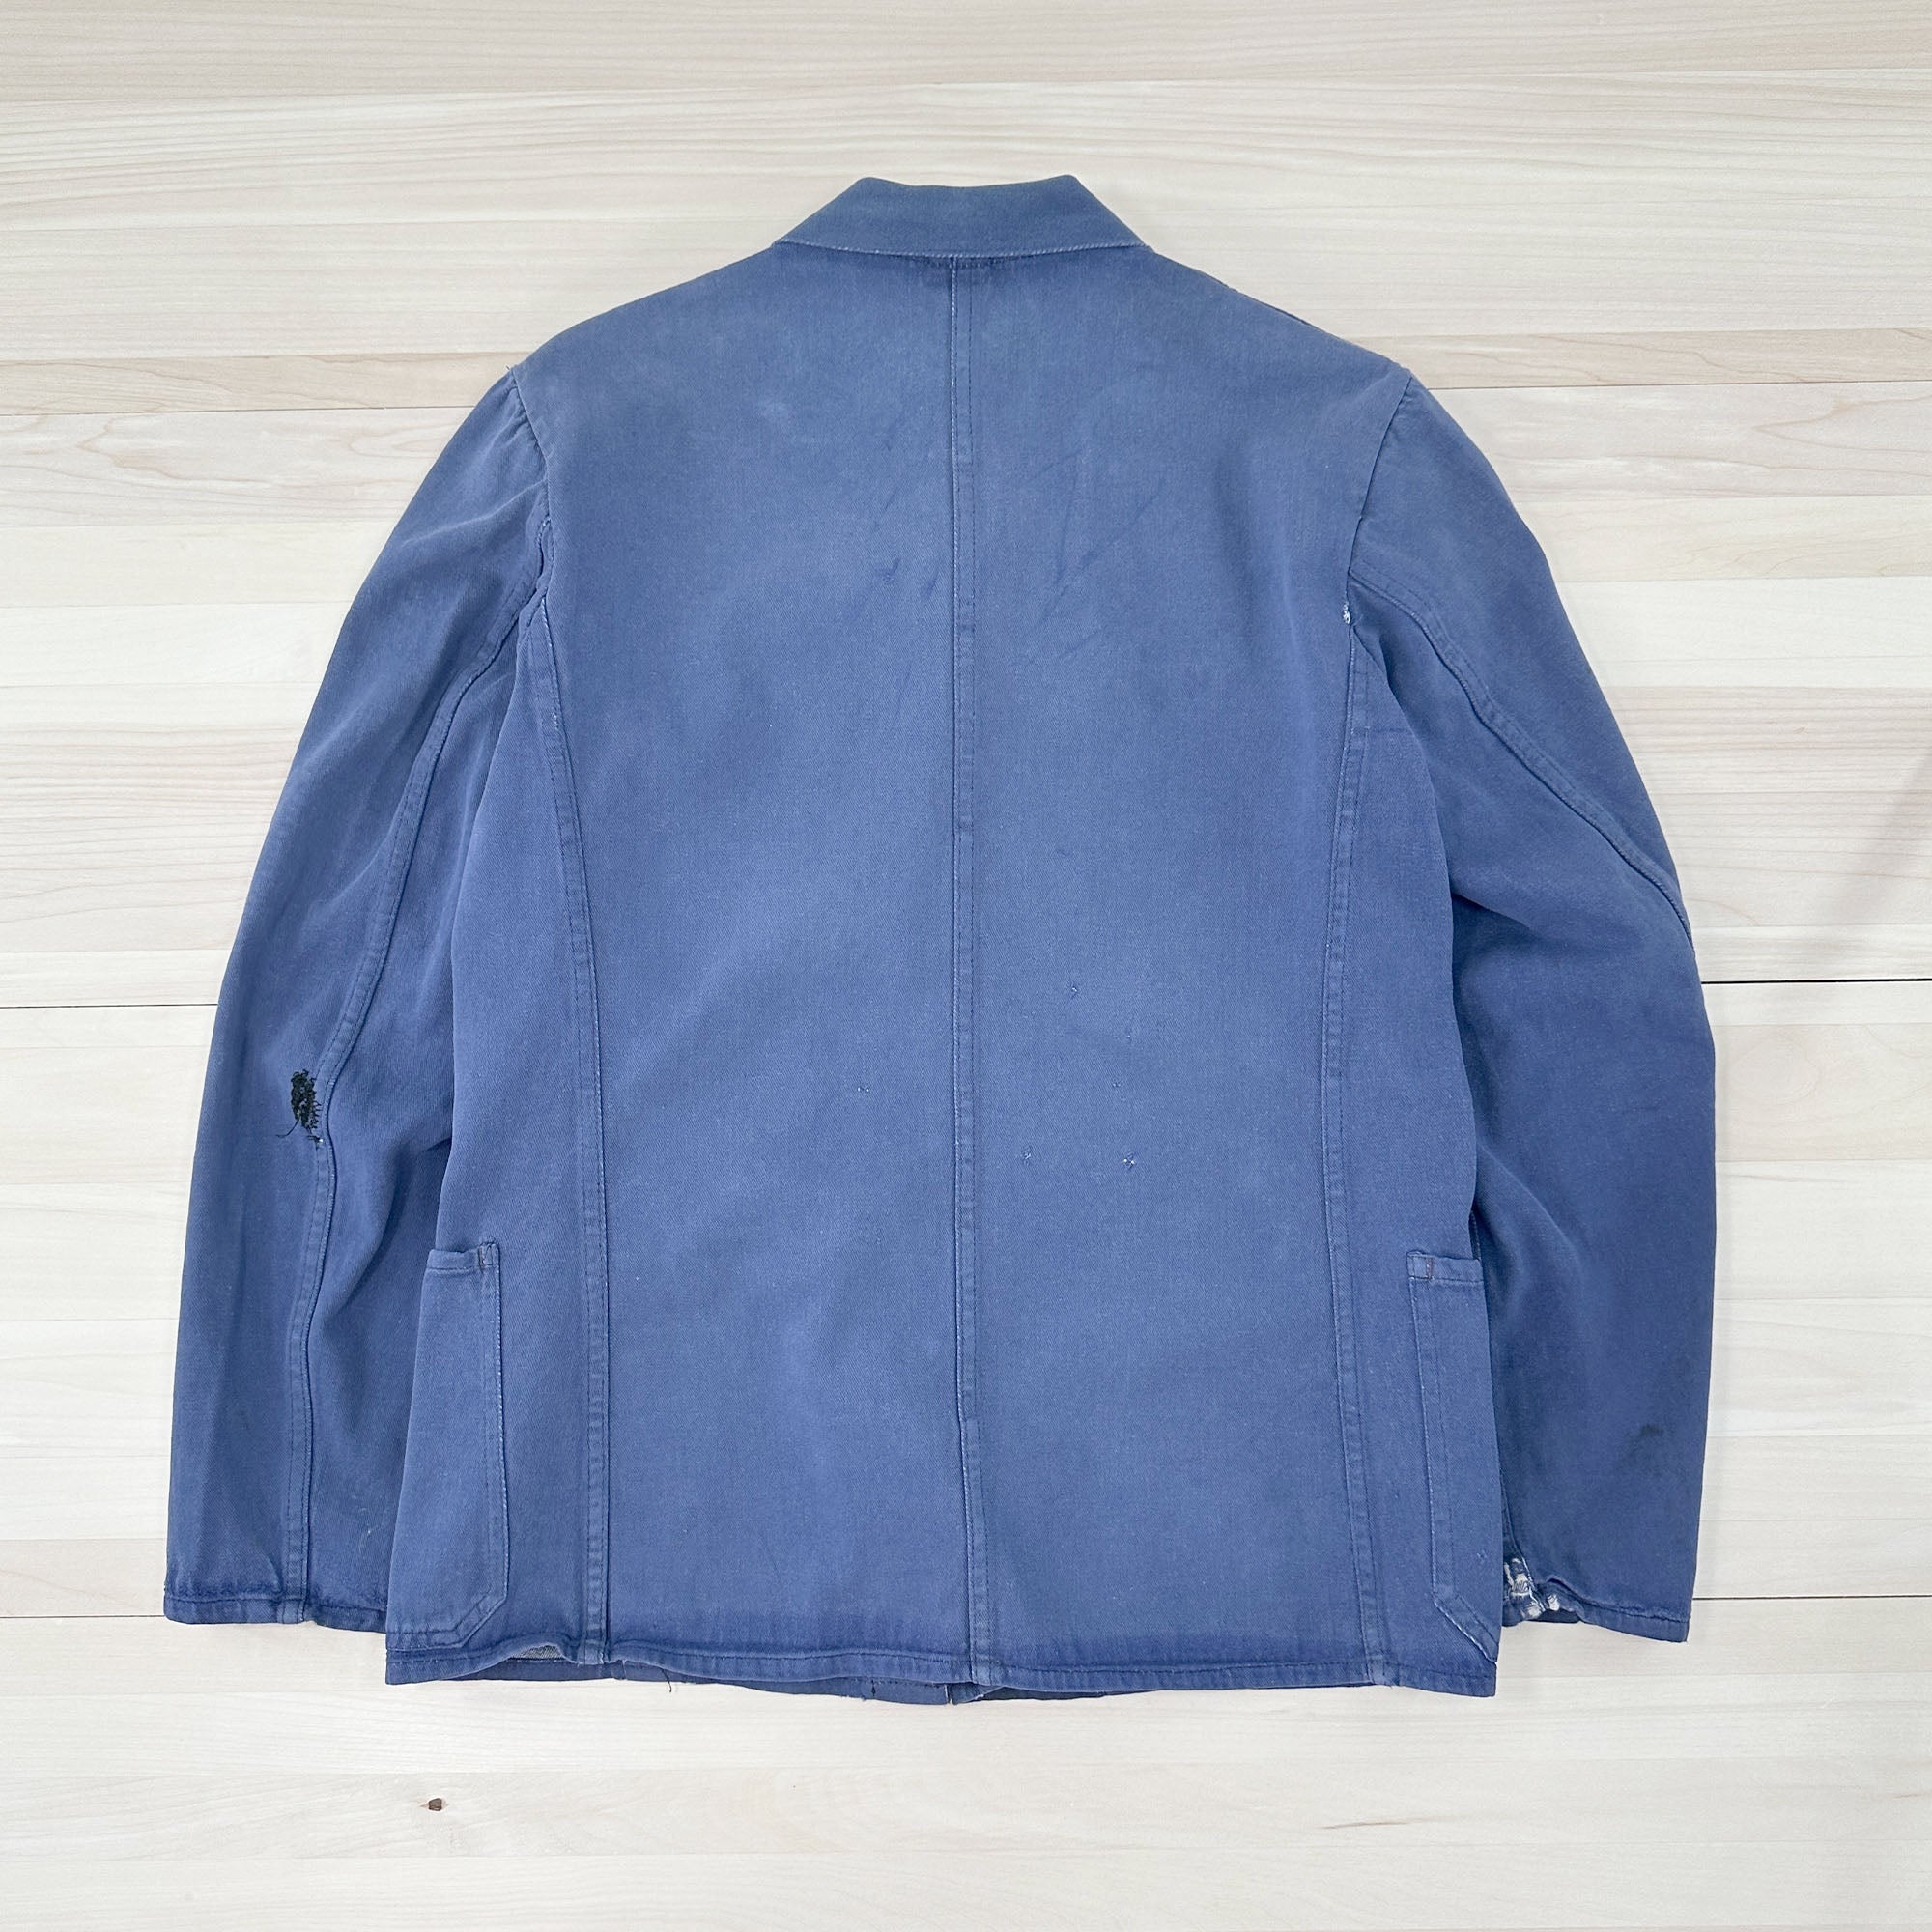 Distressed Vintage Krähe Blue Work Jacket - Women's Medium-7